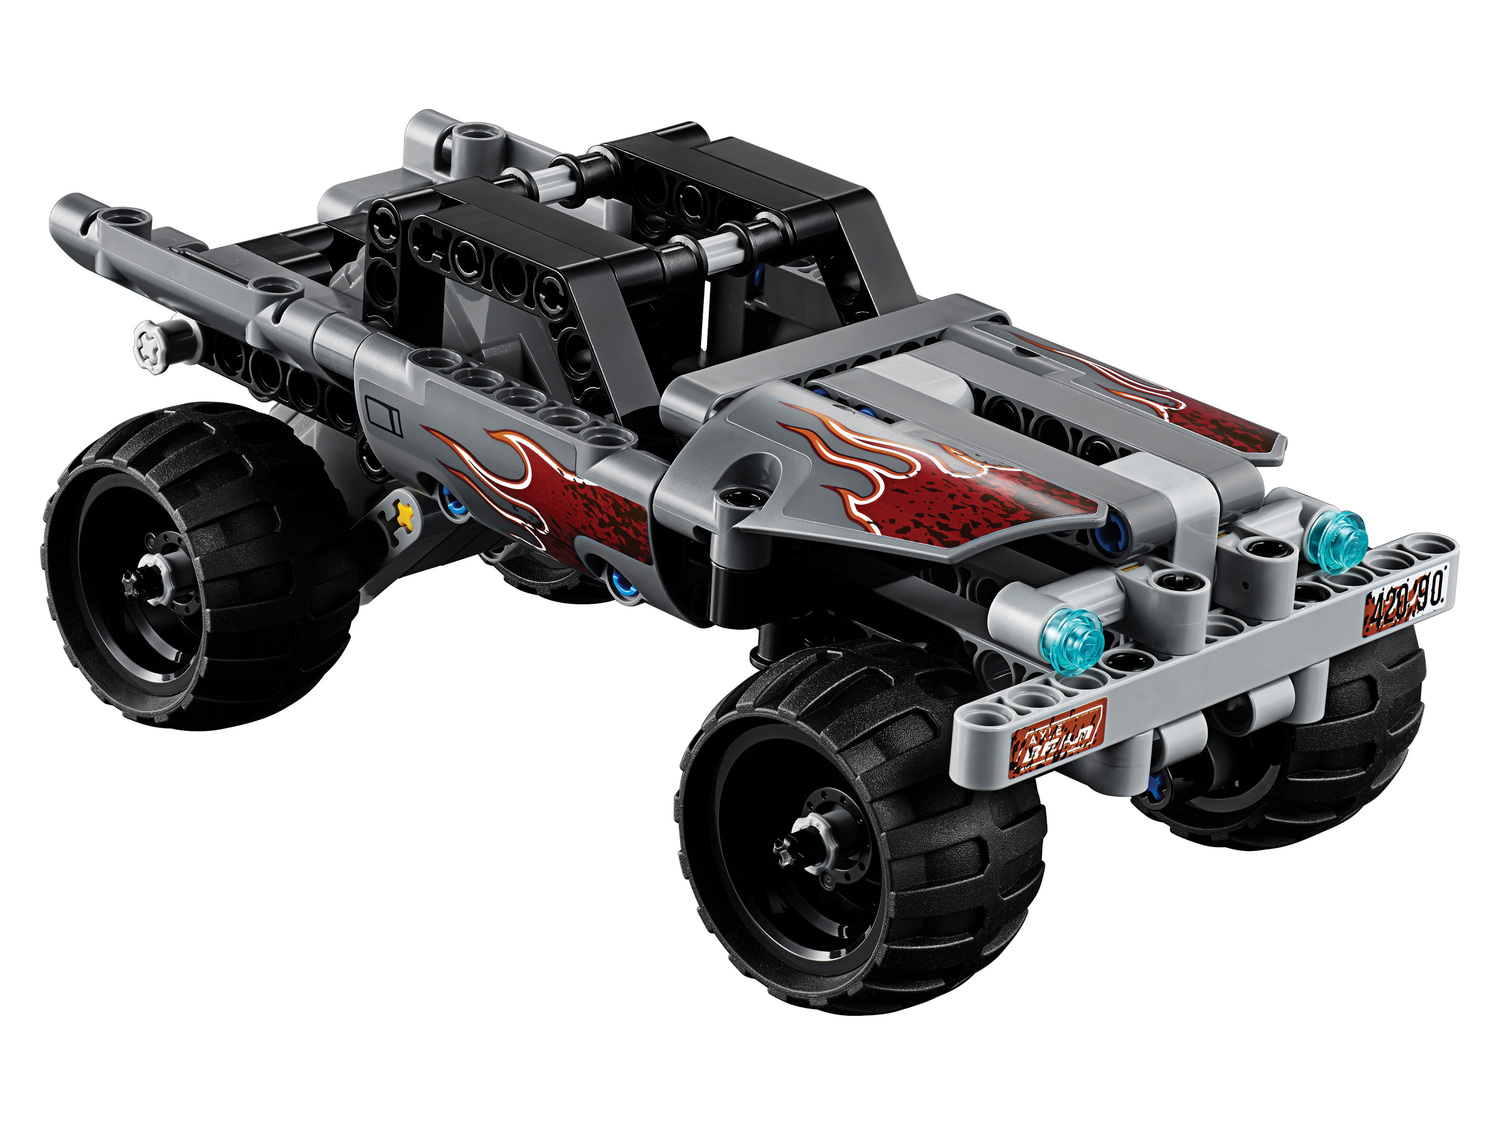 Klocki LEGO 42090 Lego, cena 74,90 PLN  
-  Monster truck złoczyńc&oacute;w
Opis